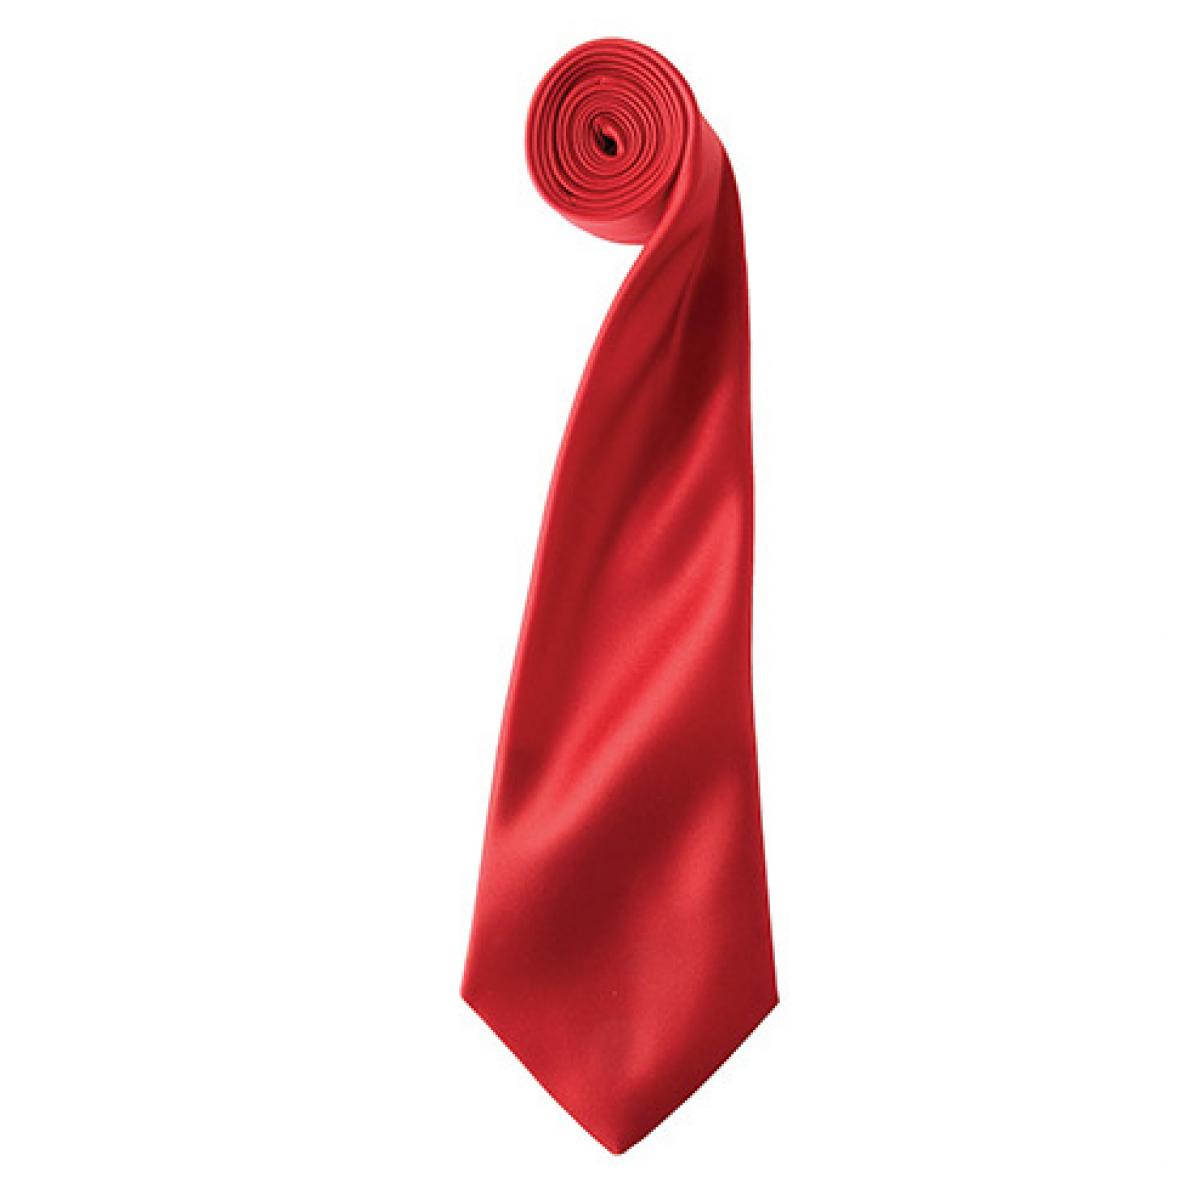 Hersteller: Premier Workwear Herstellernummer: PR750 Artikelbezeichnung: Satin Tie ´Colours´ / 144 x 8,5 cm Farbe: Red (ca. Pantone 200)